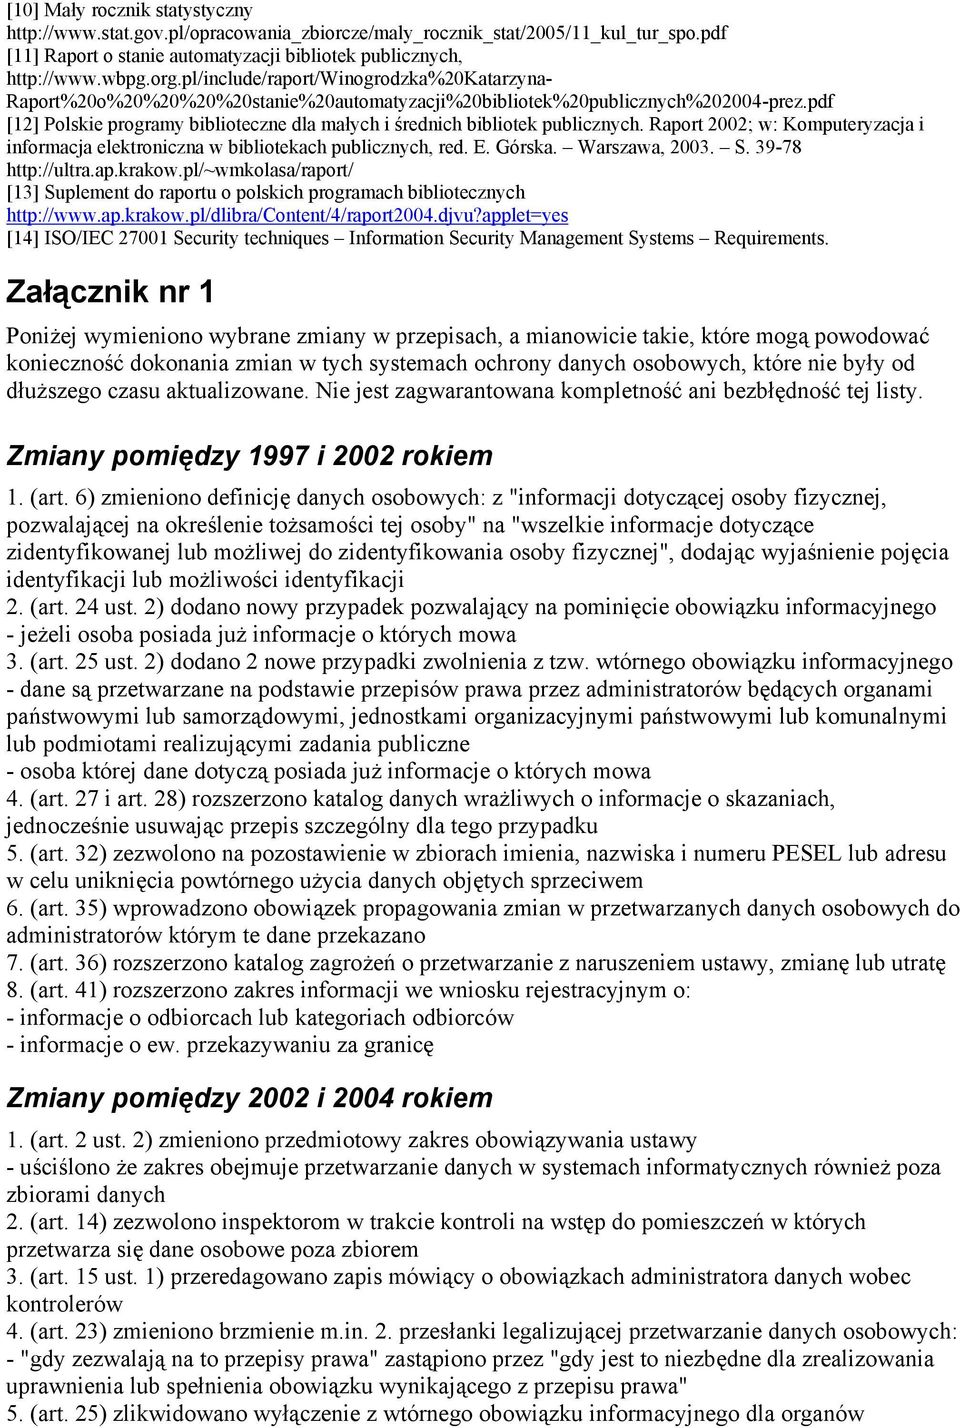 pdf [12] Polskie programy biblioteczne dla małych i średnich bibliotek publicznych. Raport 2002; w: Komputeryzacja i informacja elektroniczna w bibliotekach publicznych, red. E. Górska.